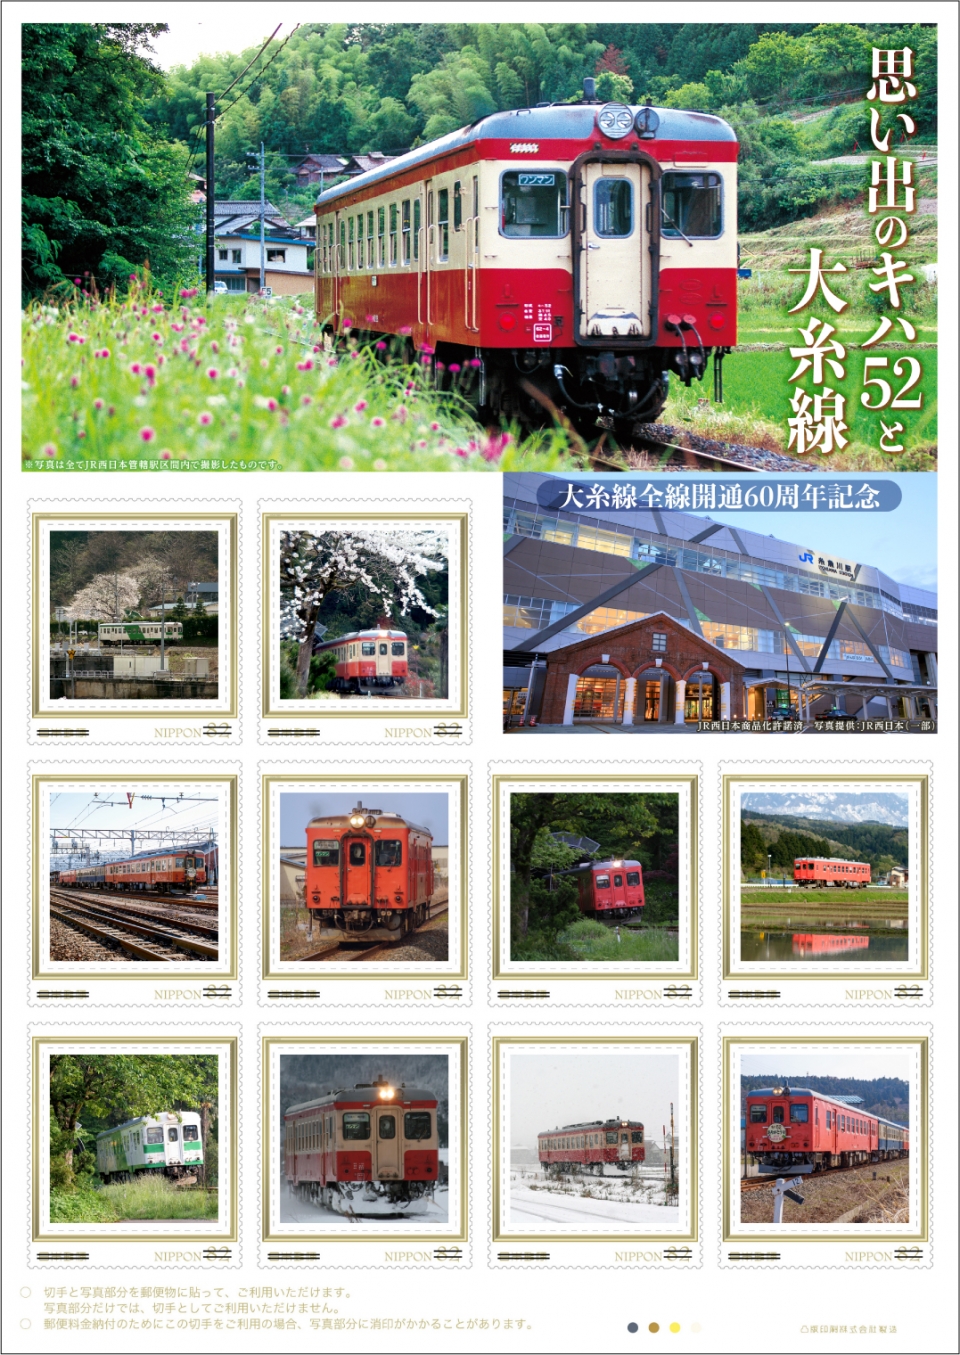 ニュース画像：切手「思い出のキハ52と大糸線」 - 「日本郵便、大糸線全線開通60周年を記念したキハ52のフレーム切手を発売中」